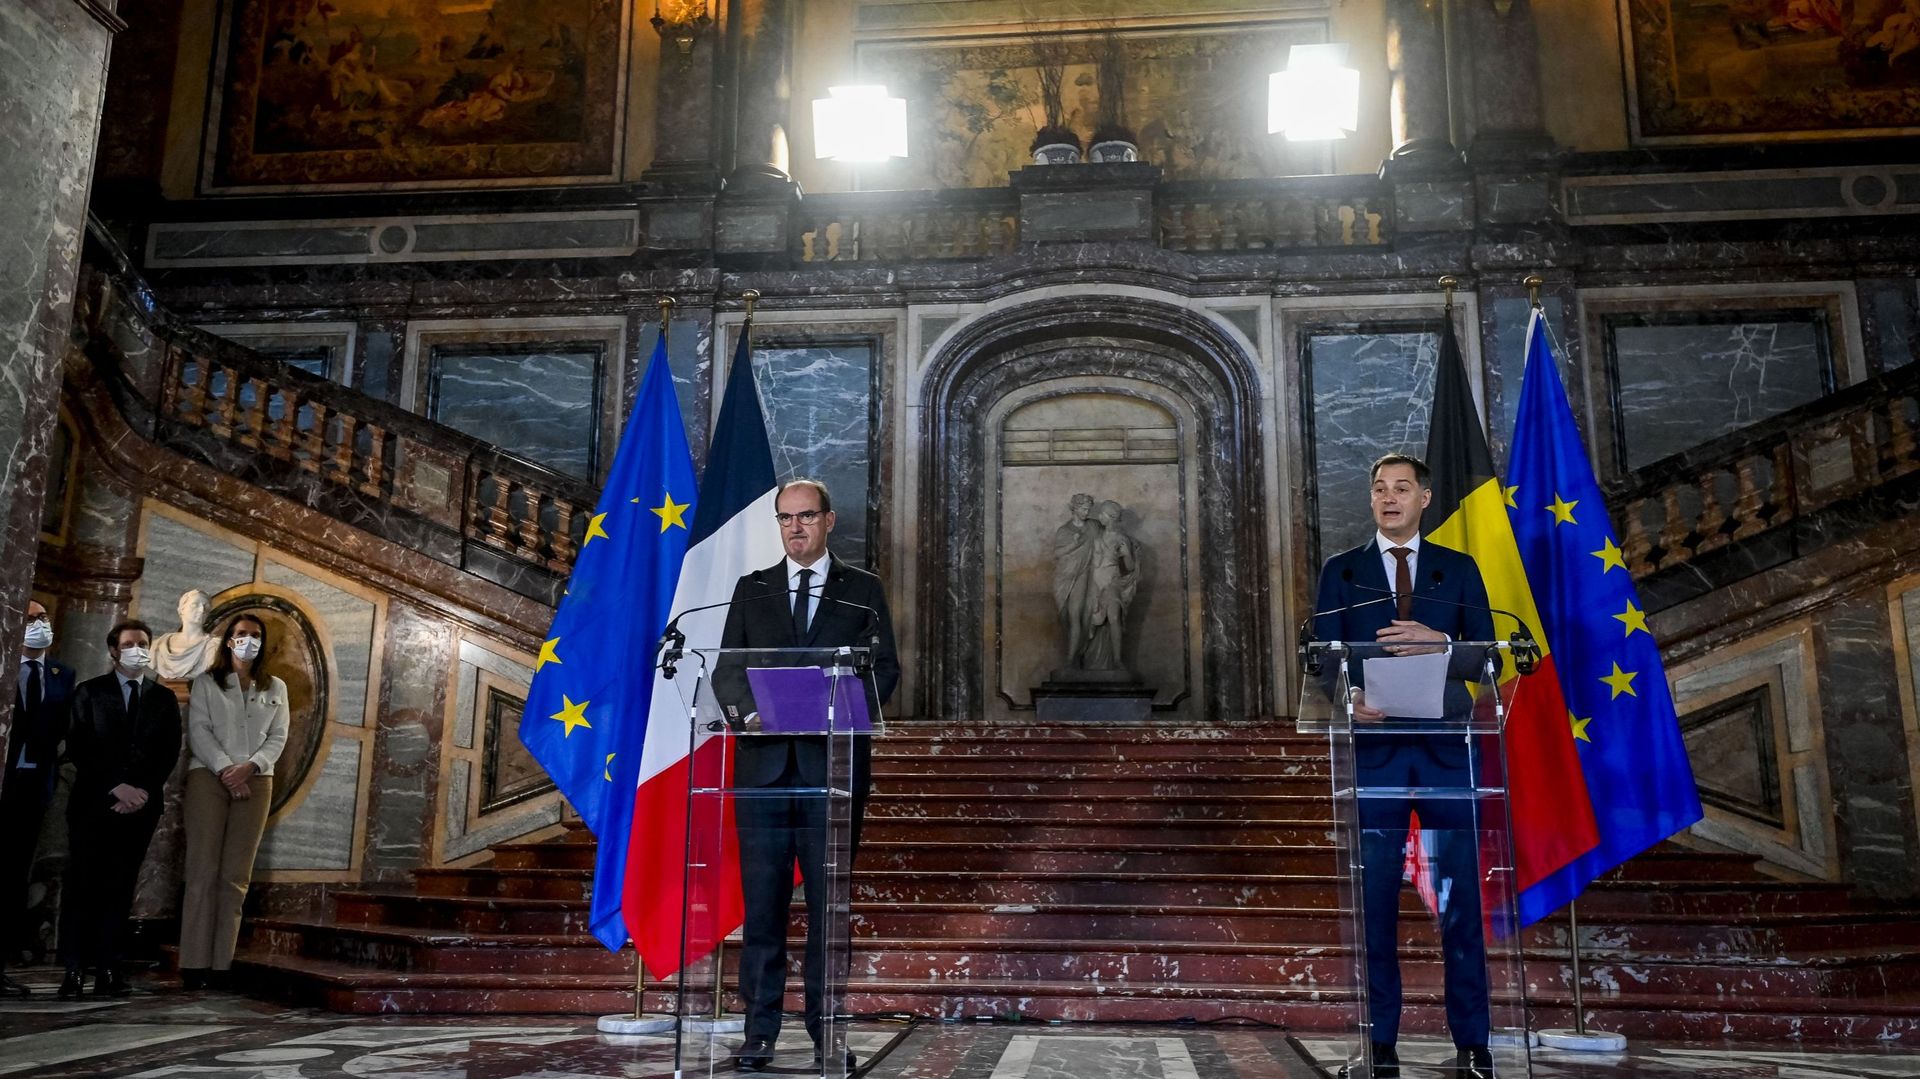 Louée par les autorités des deux pays, comme ce fut le cas le 22 novembre par les premiers ministres, l’image de la coopération franco-belge est ternie.